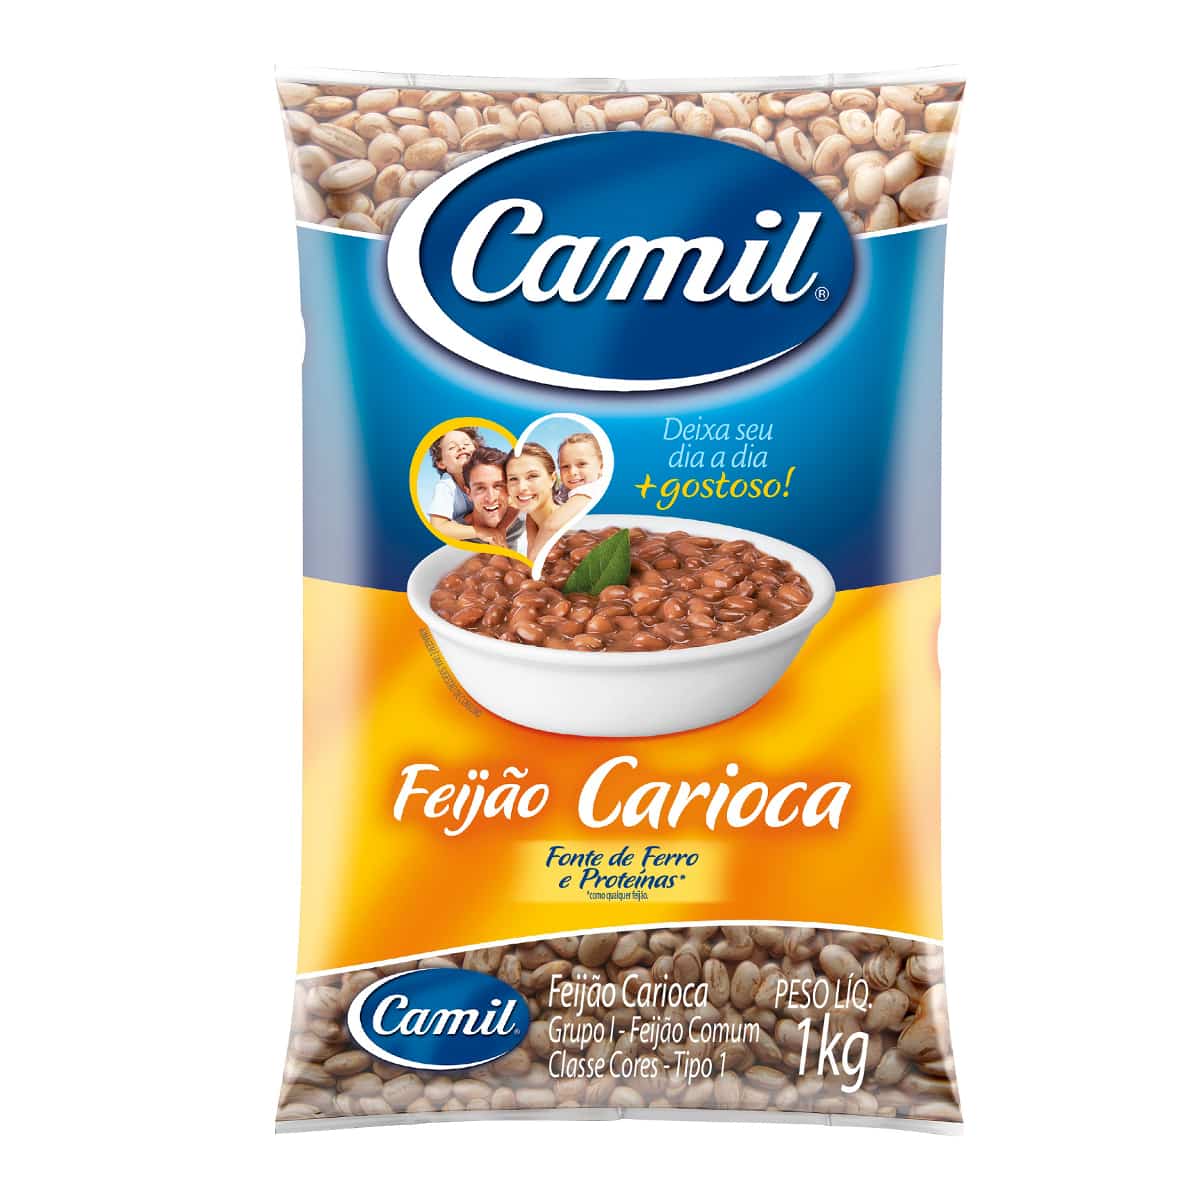 Feijao Camil Carioca 1Kg - Beans Camil Carioca 1Kg